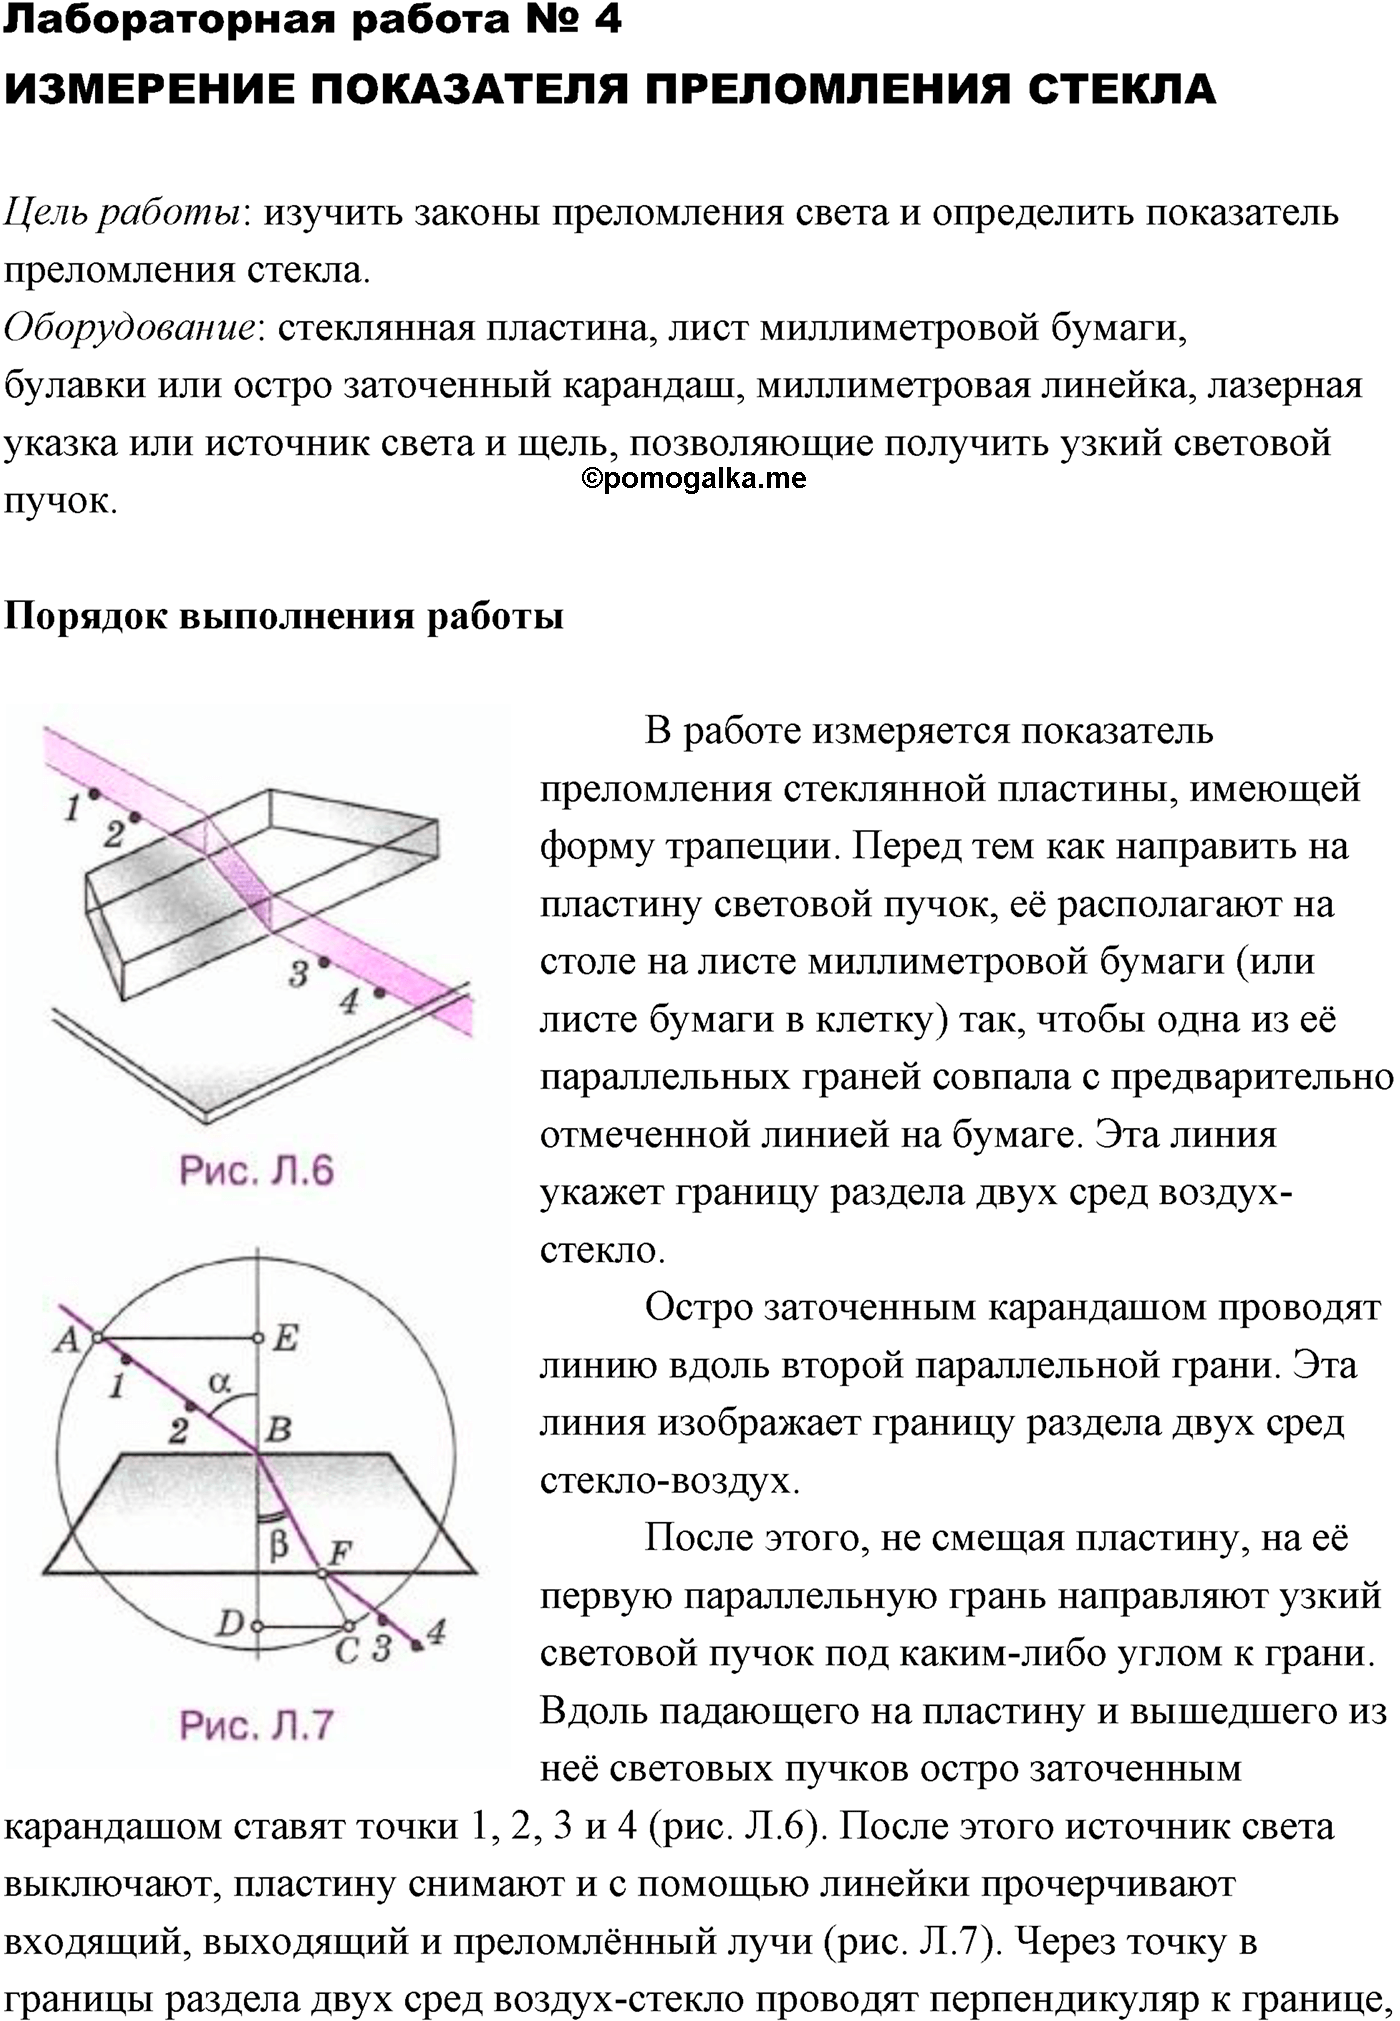 лабораторный опыт №4 физика 11 класс Мякишев